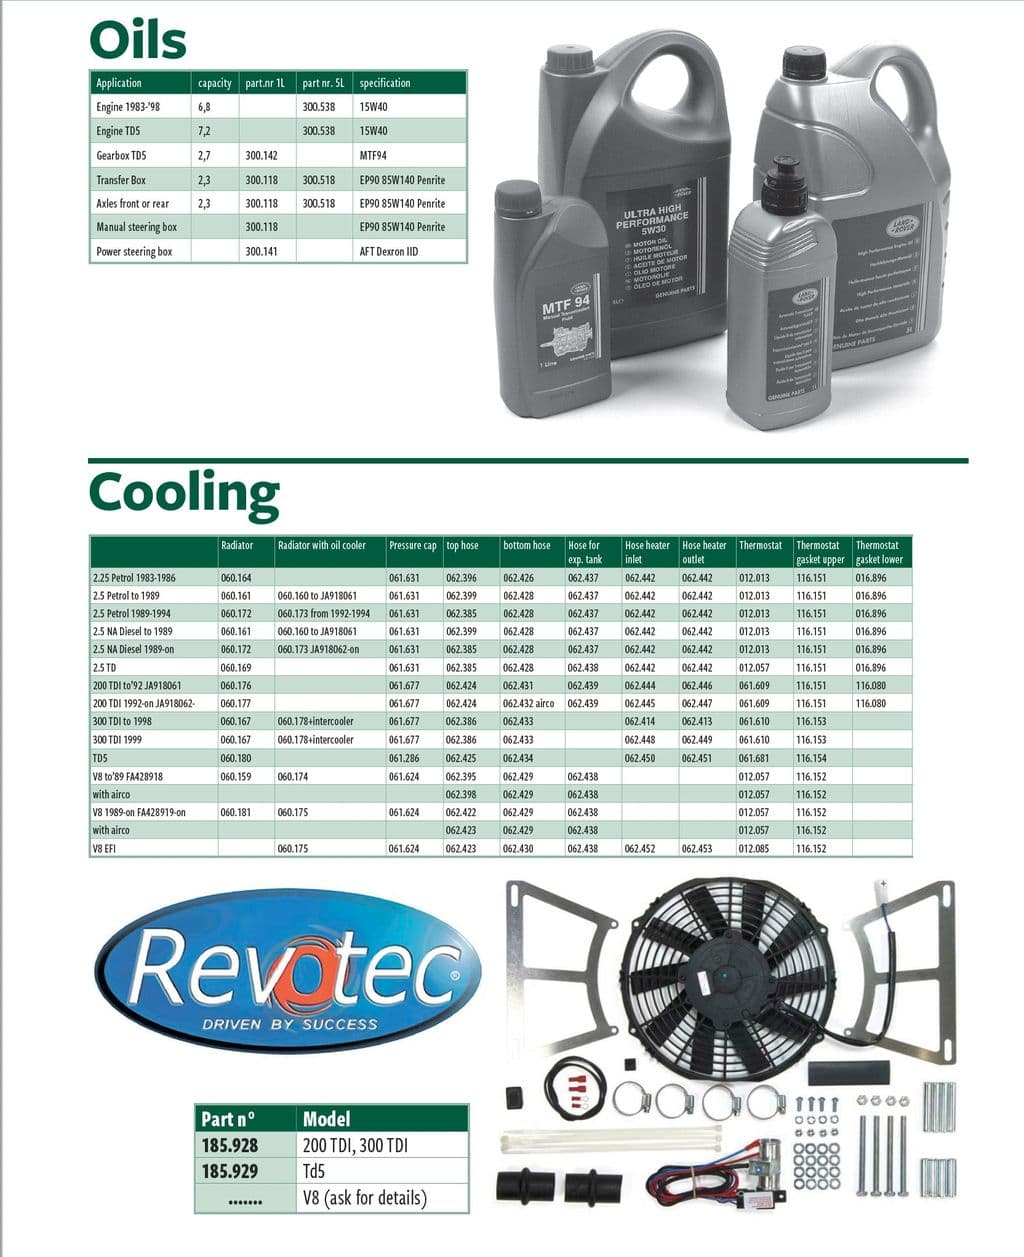 Oils & cooling - Engine upgrade Sistema Raffreddamento - Sistema Raffreddamento Motore - Land Rover Defender 90-110 1984-2006 - Oils & cooling - 1